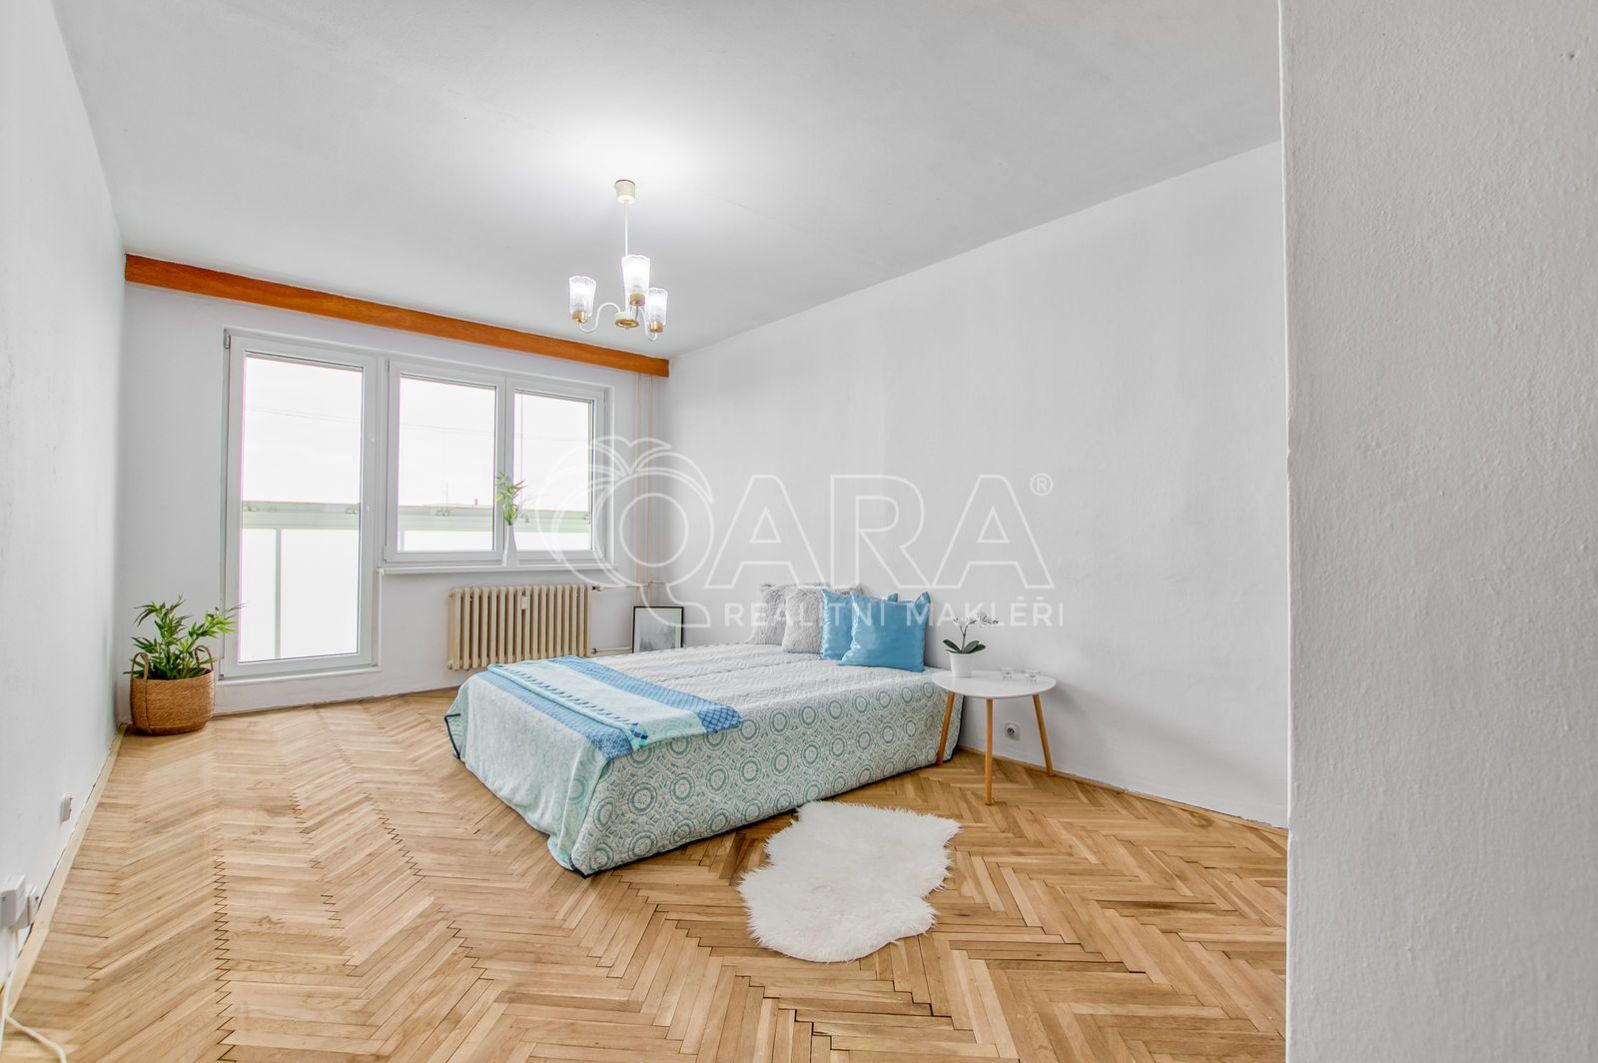 Prodej investičního bytu 1+kk, 29 m2 s ideální lokalitou, Moravská Ostrava, obrázek č. 1